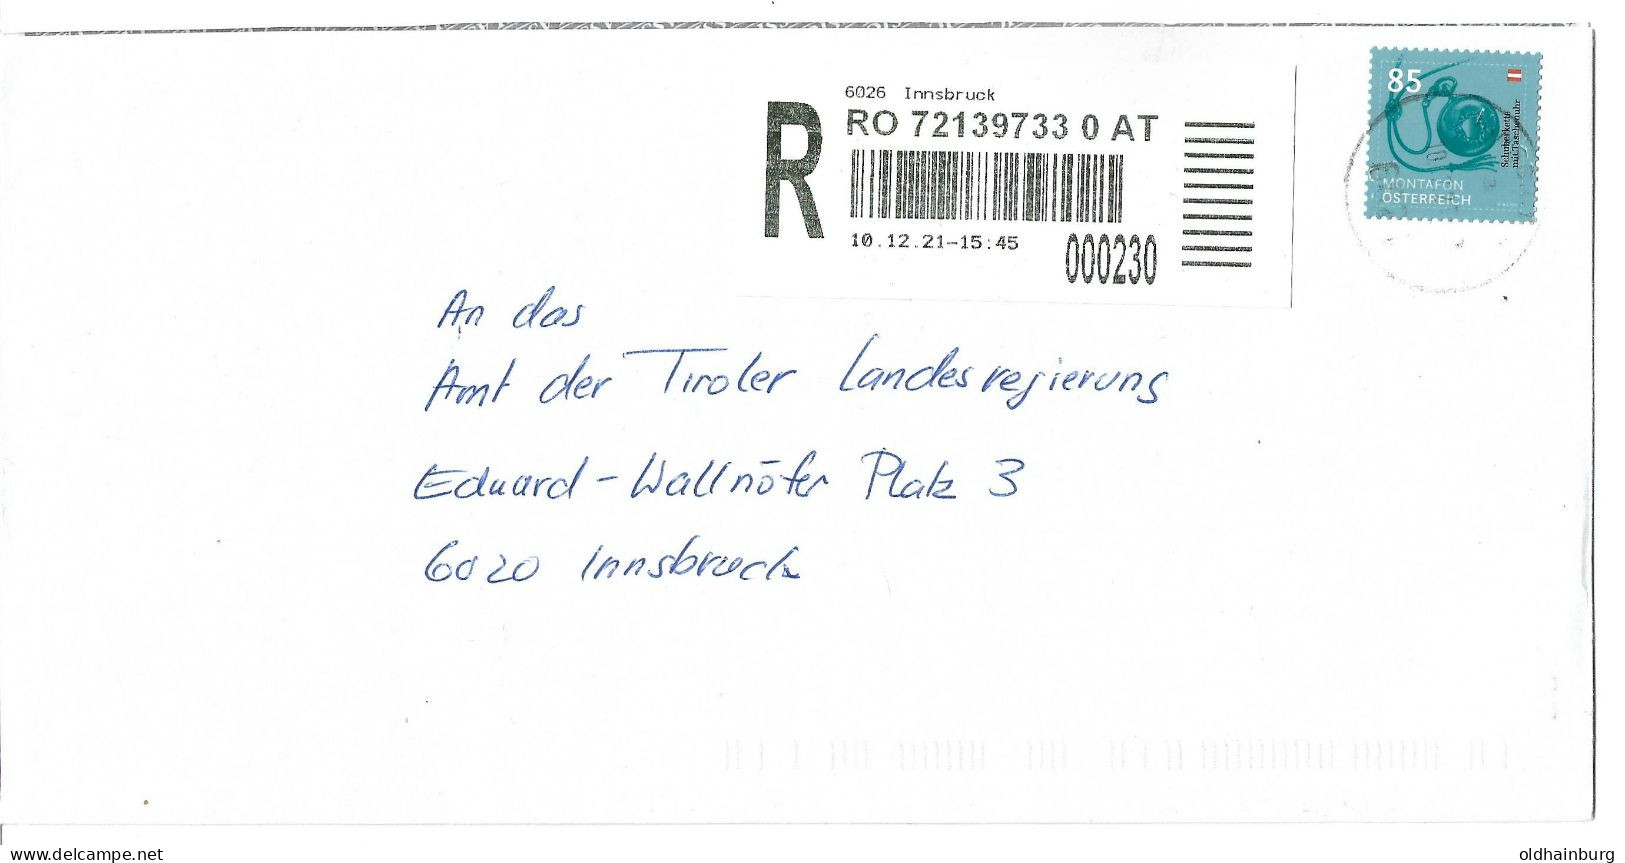 0452g: Österreich 2020, Beiwerk & Auszier Schuberkette Mit Taschenuhr, Montafon, Reko 6020 Innsbruck - Textiles